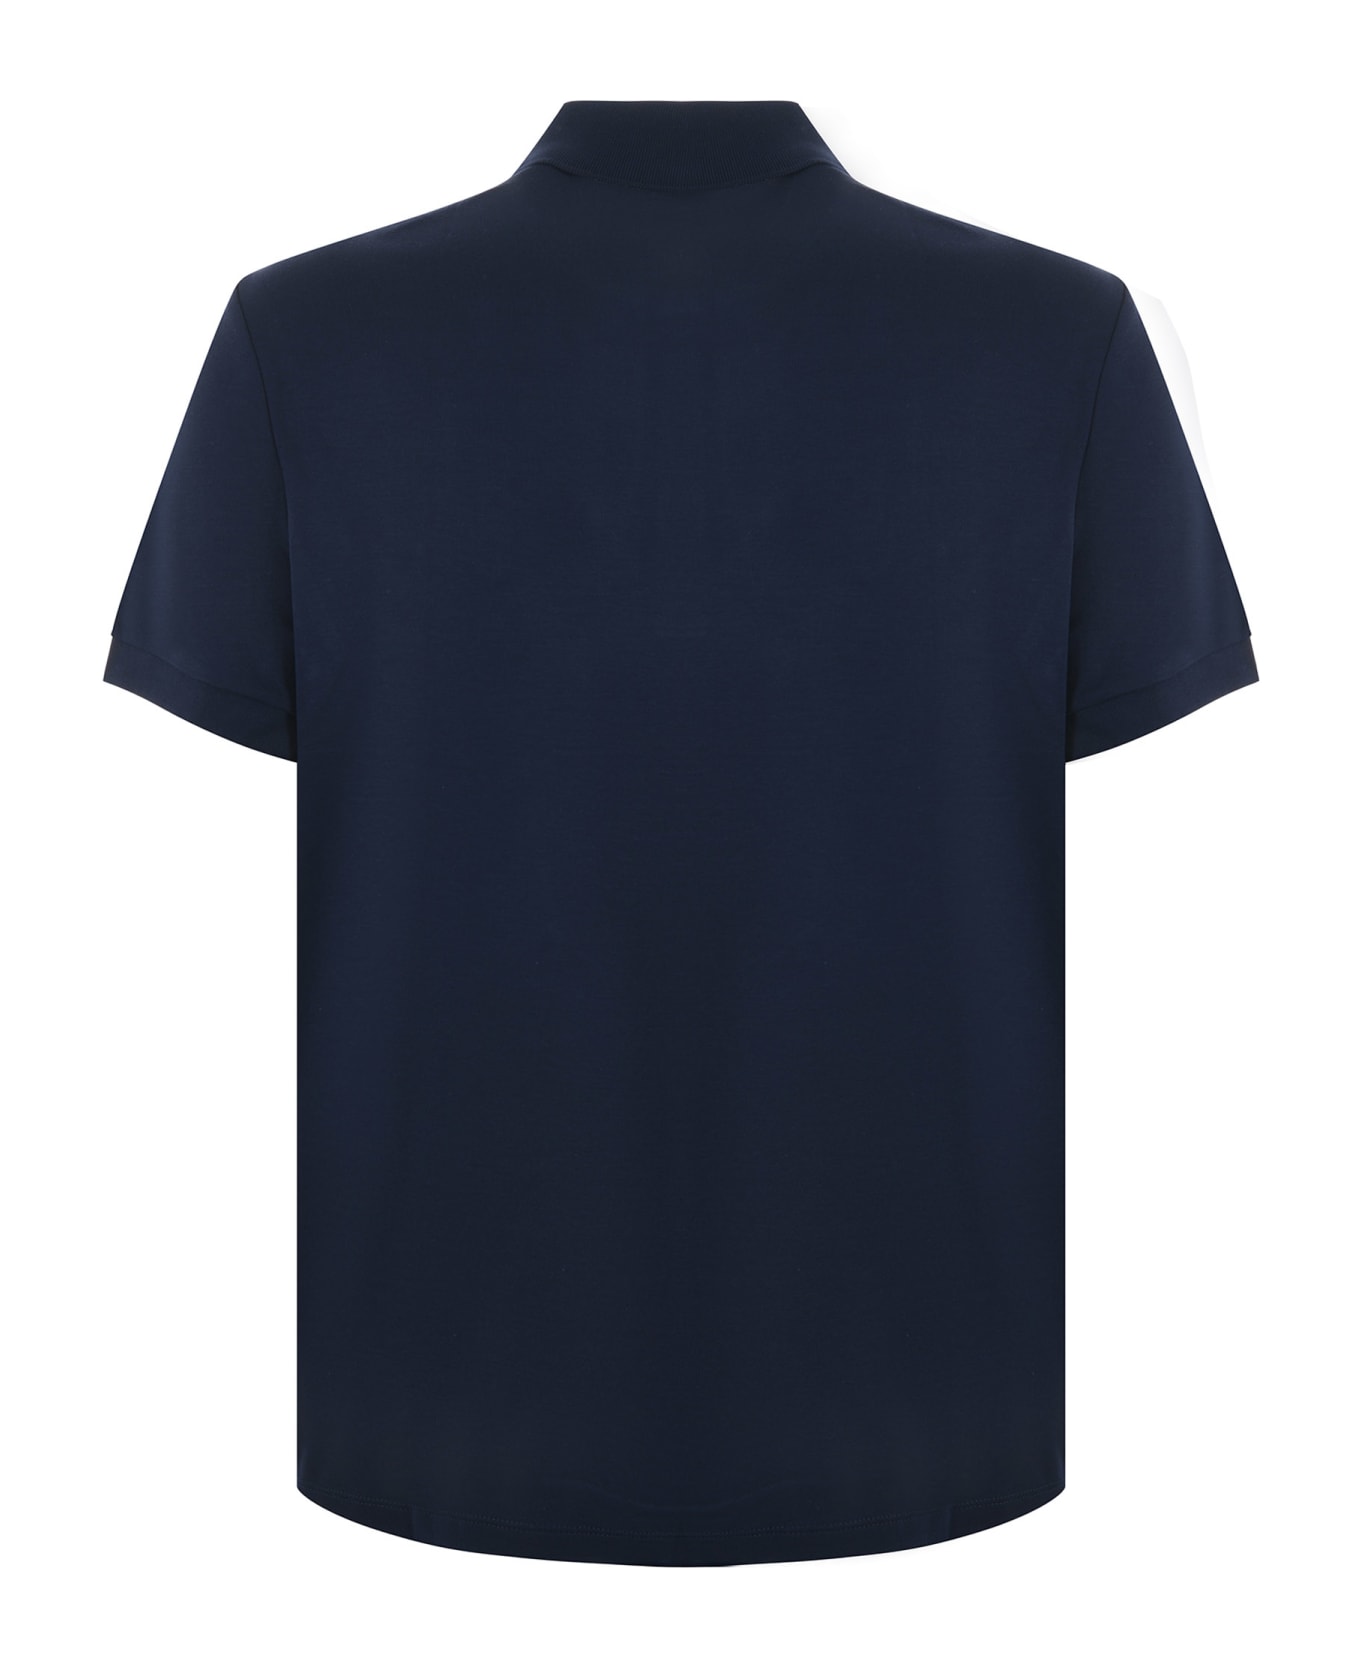 Lacoste Polo Lacoste In Jersey Di Cotone Disponibile Store Scafati - Blu scuro ポロシャツ